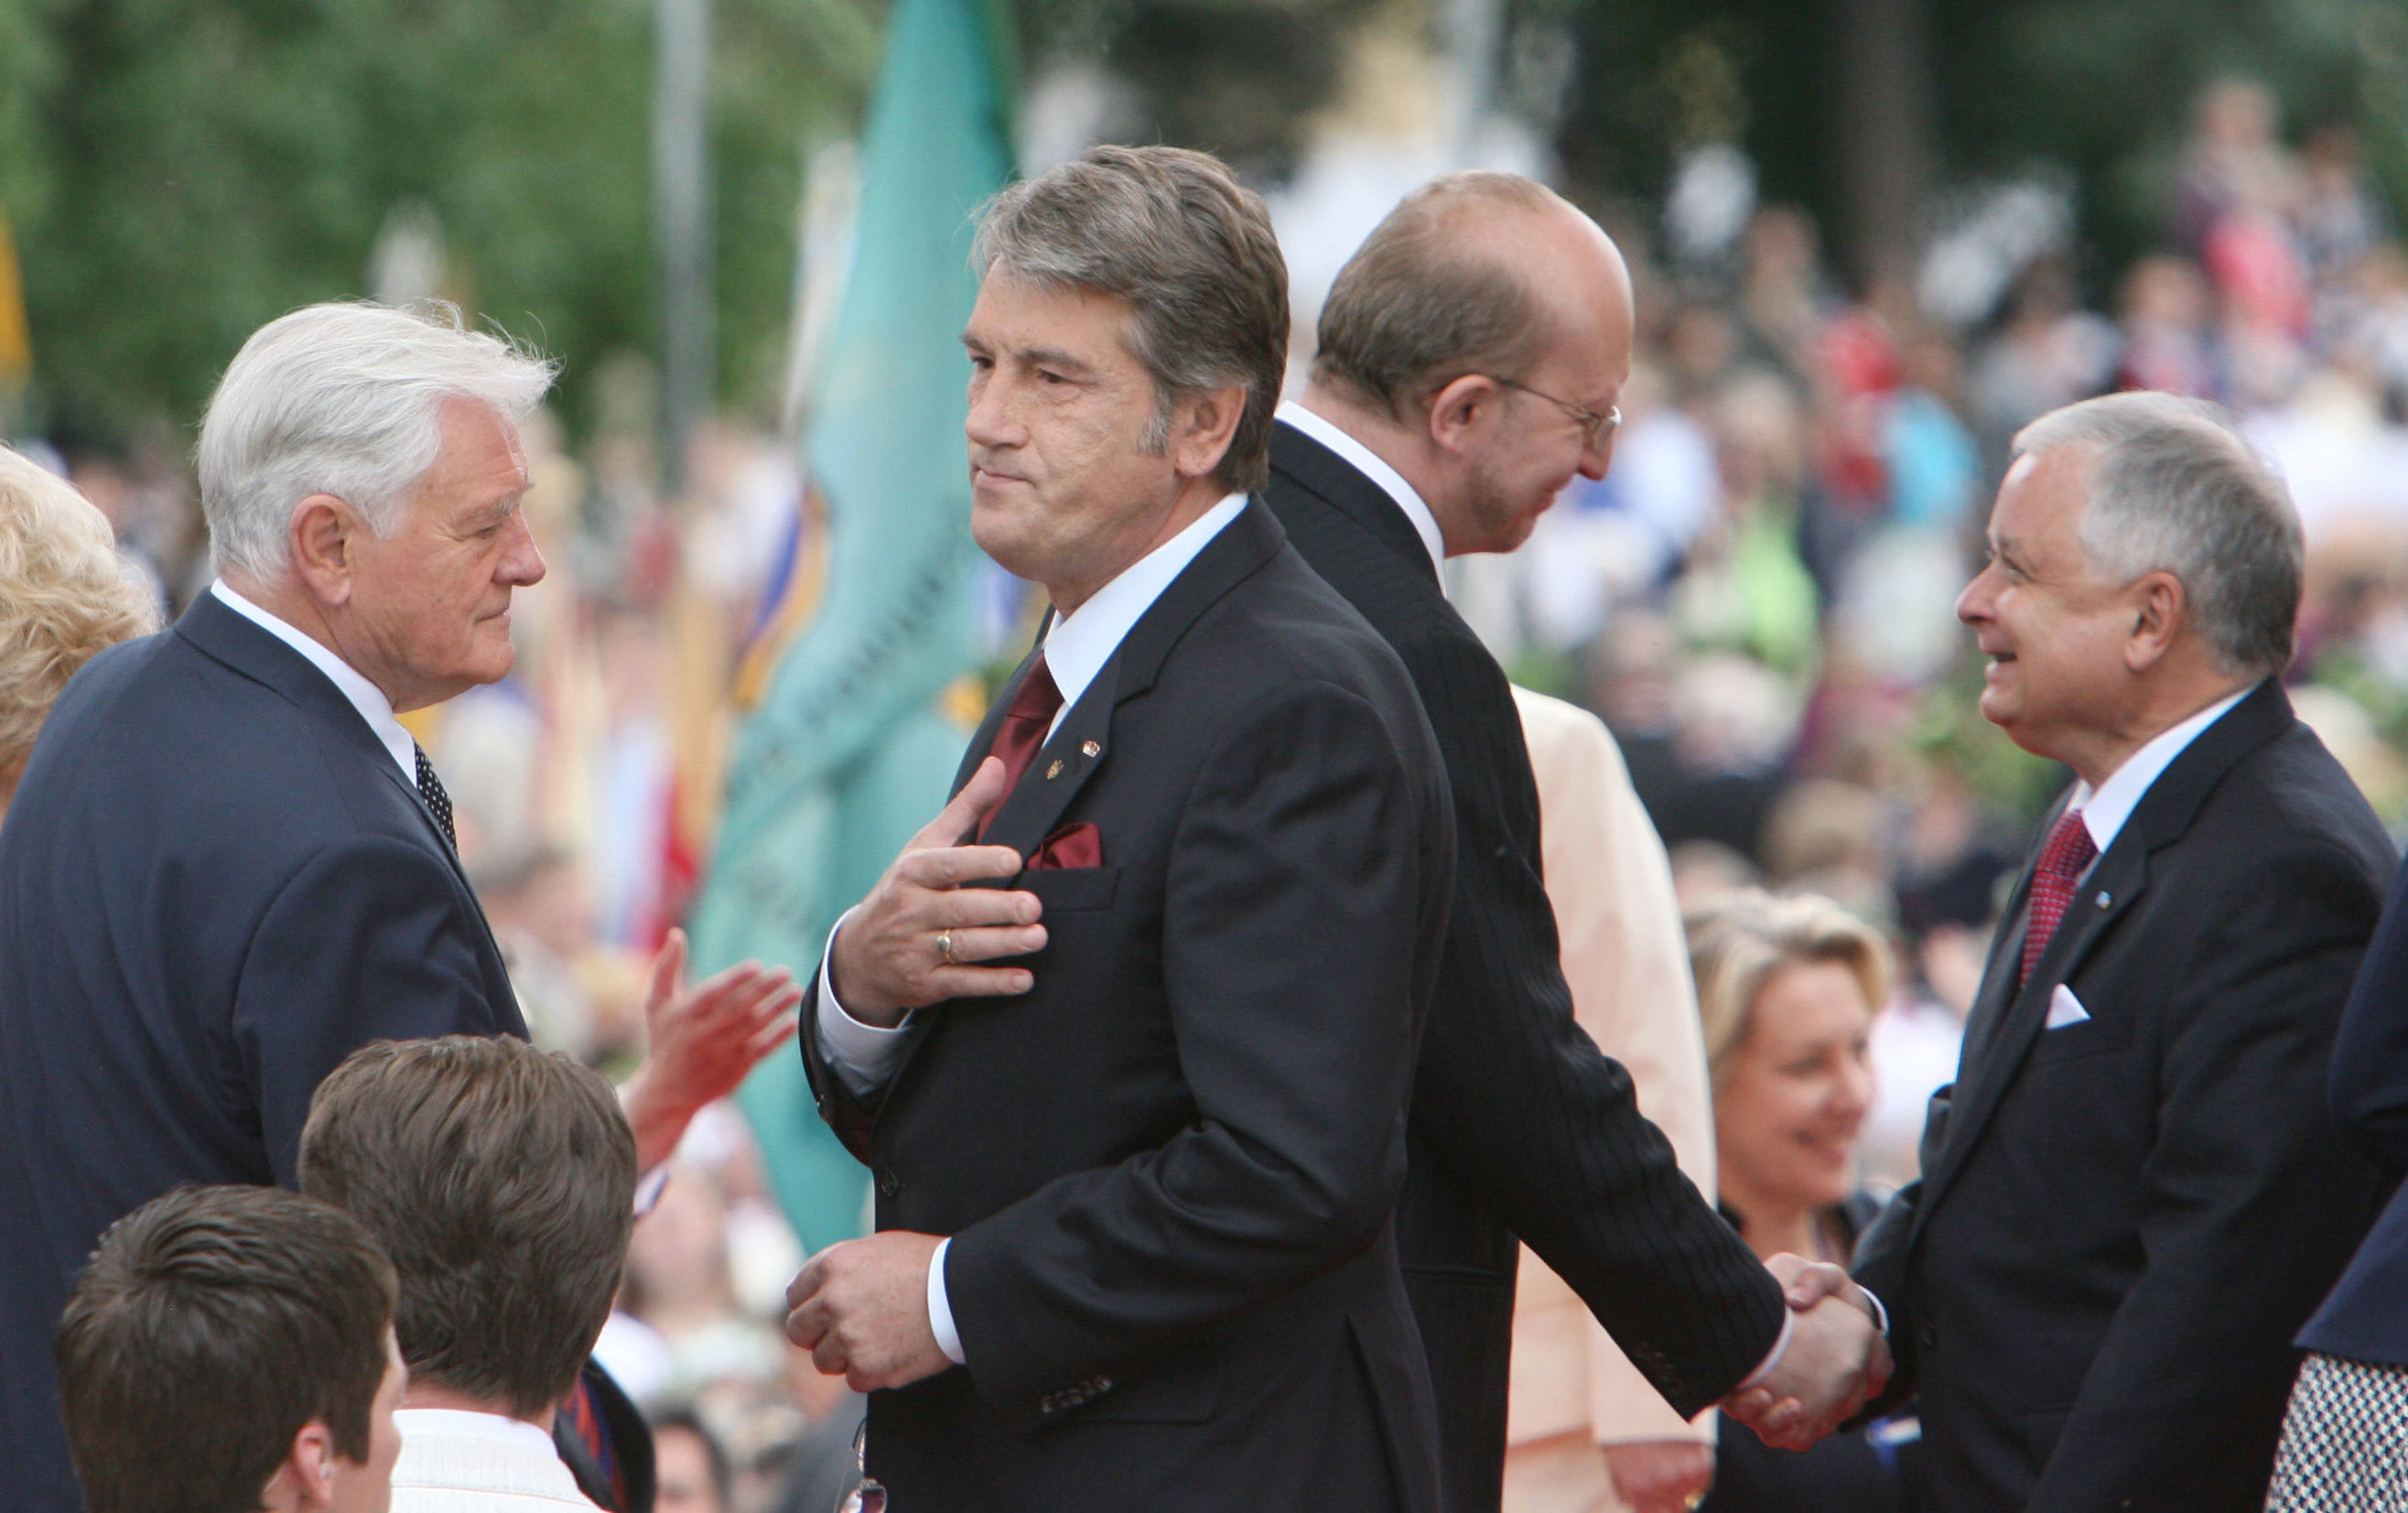 Президент Литвы Валдас Адамкус, президент Украины Виктор Ющенко, король Норвегии Харальд V и президент Польши Лех Качиньский (слева направо) на Кафедральной площади Вильнюса во время празднования тысячелетия Литвы.